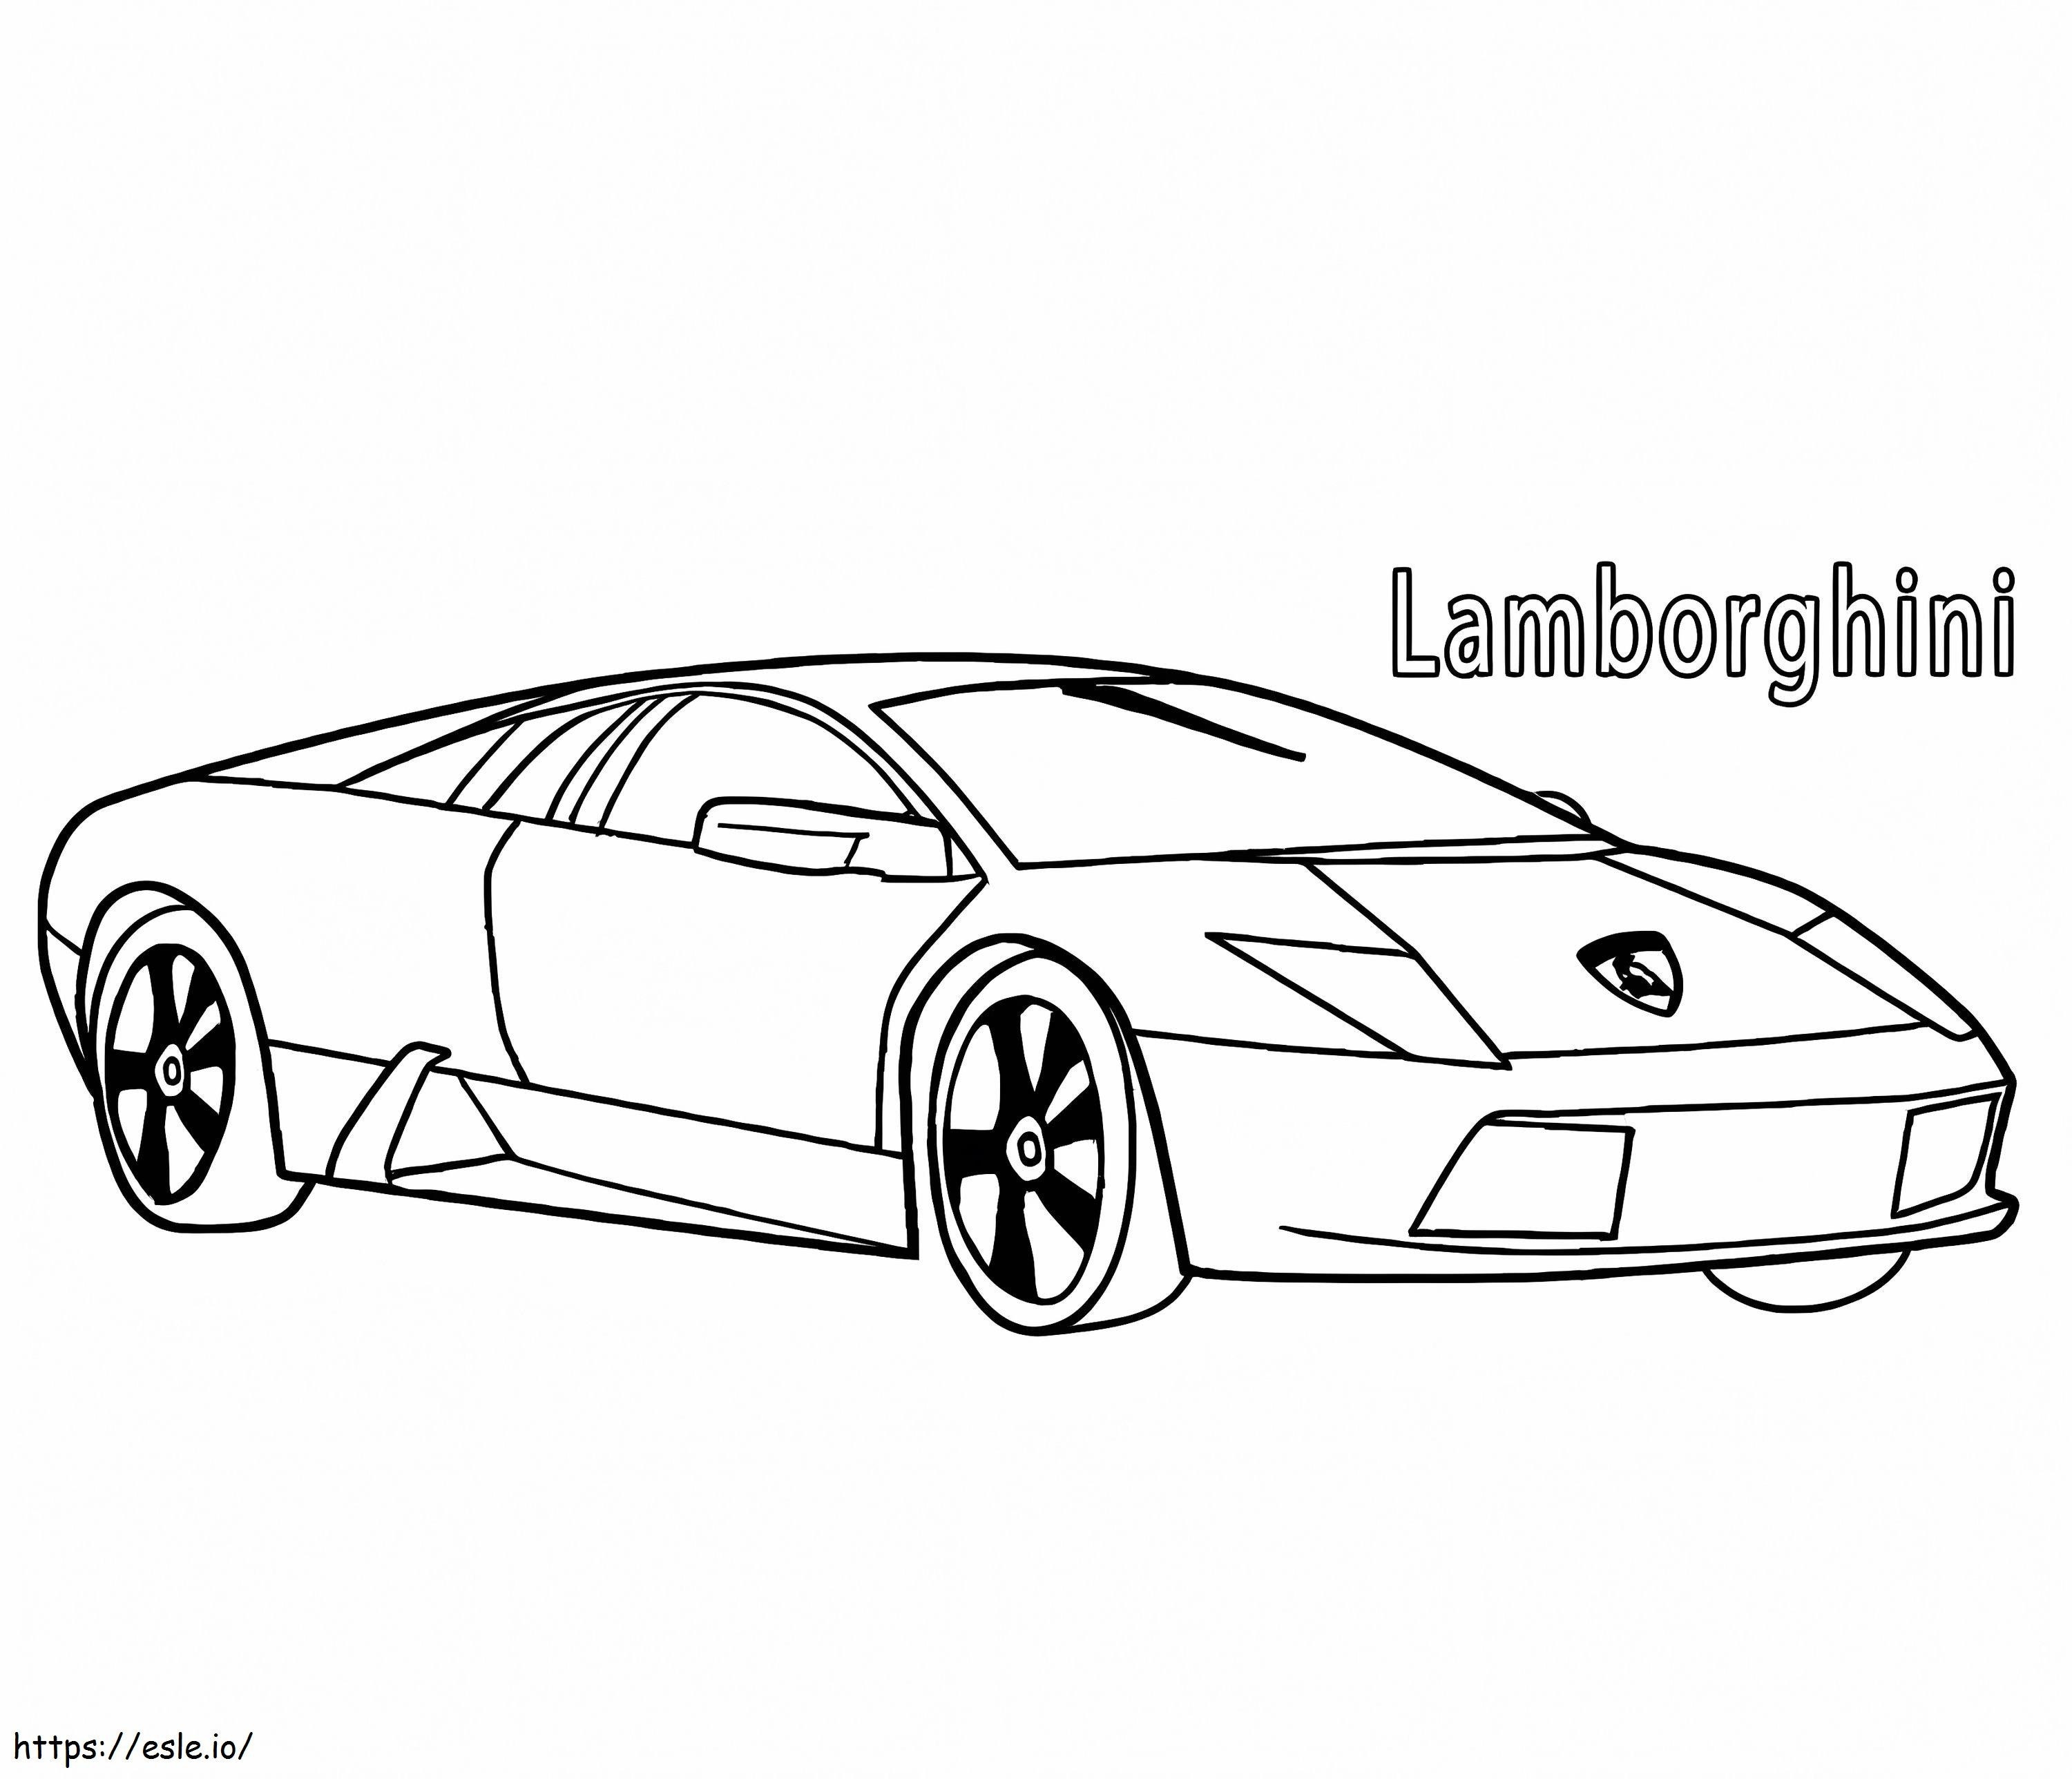 Lamborghini3 kleurplaat kleurplaat